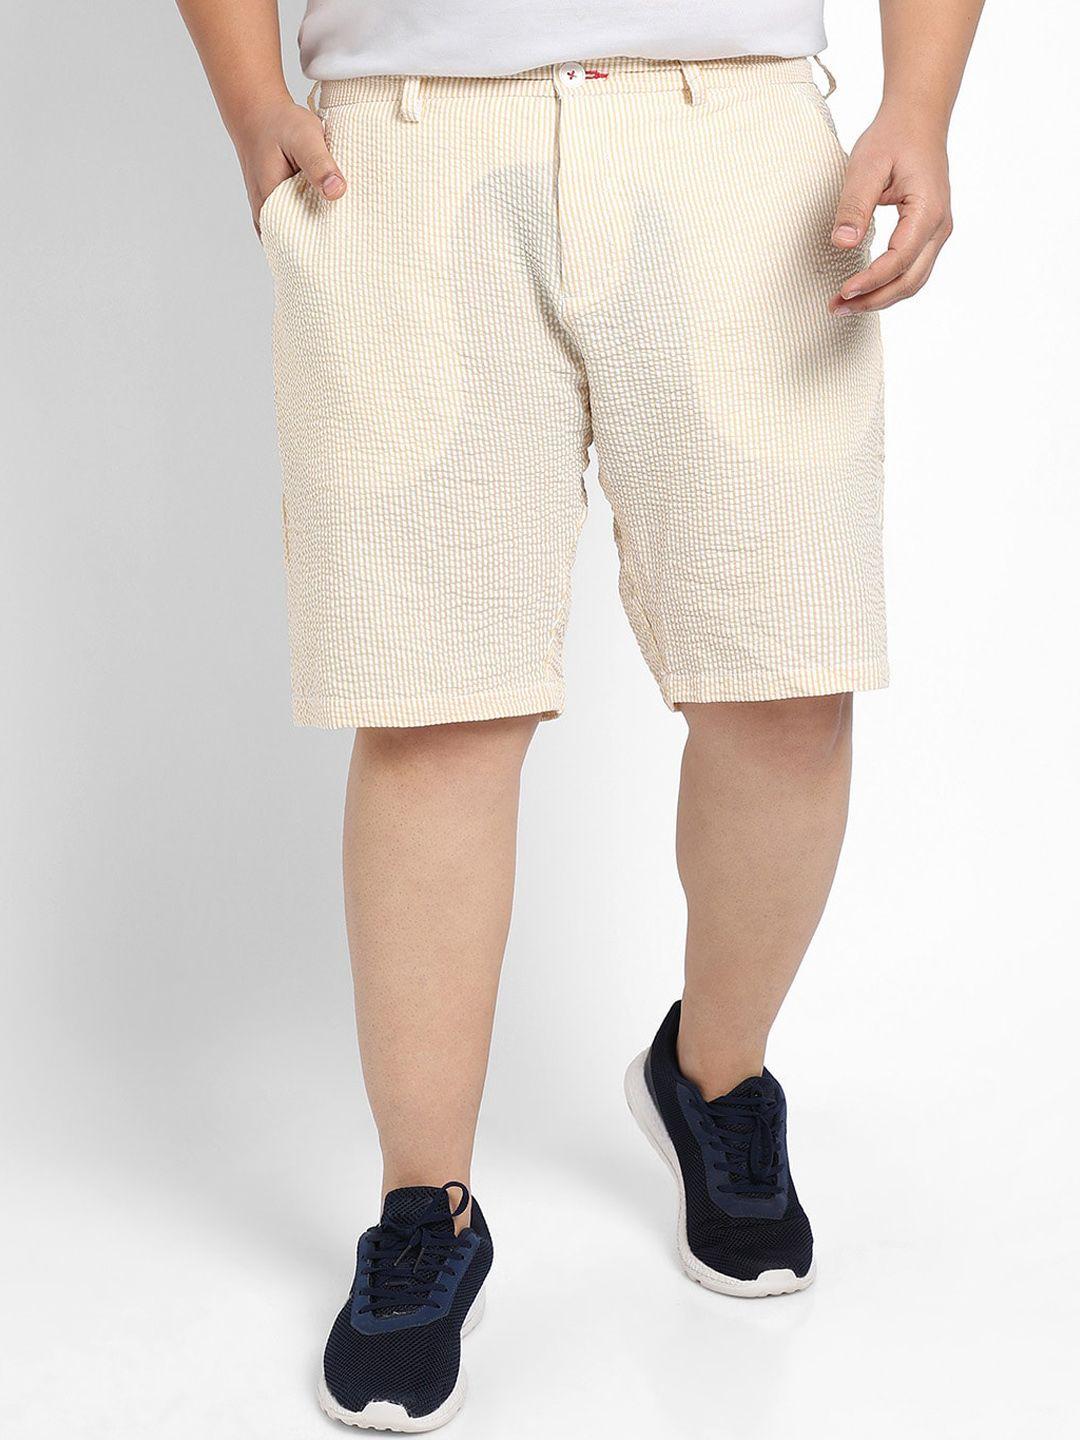 instafab-plus-men-self-design-mid-rise-cotton-seersucker-shorts